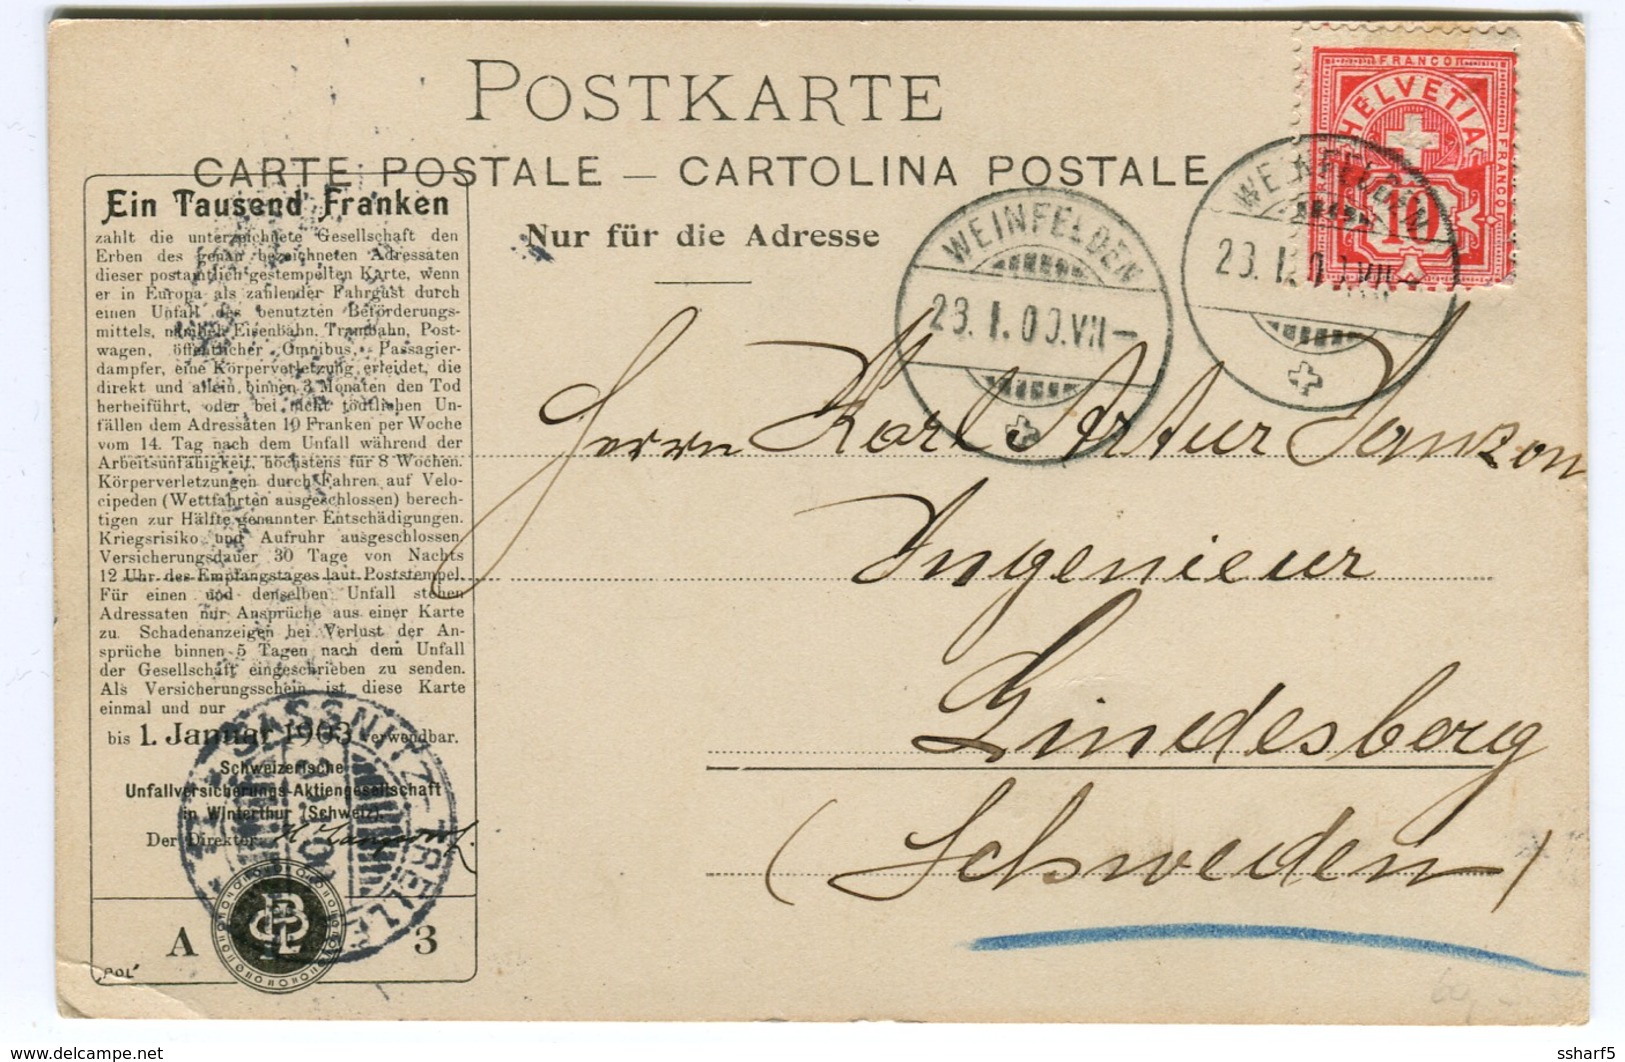 Unfallsversicherungs-Aktienges. Winterthur WERBEKARTE 1900 Weinfelden "BARQUE" - Enge